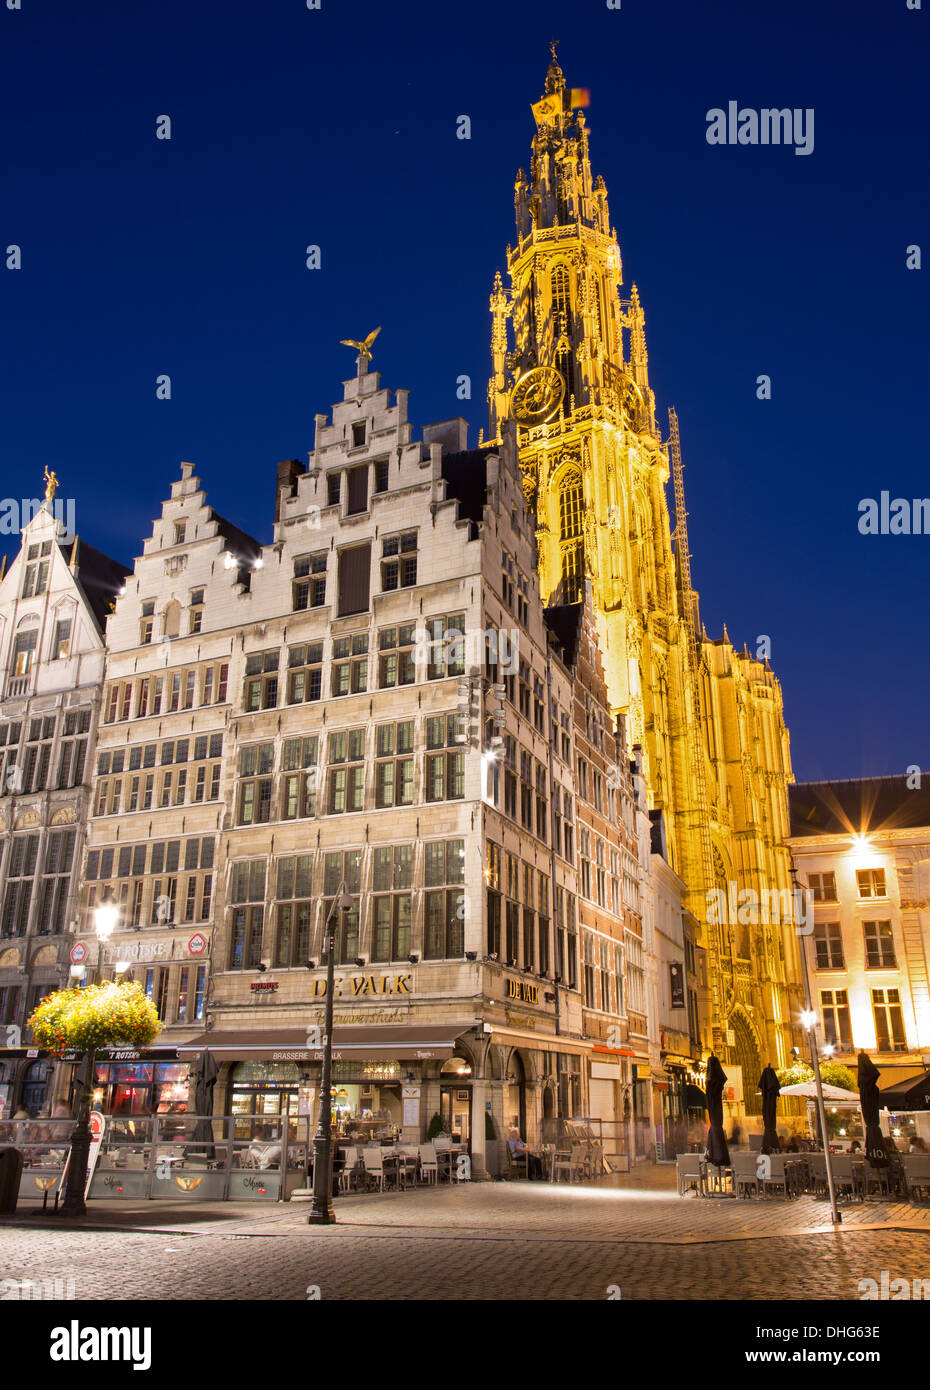 Antwerpen, Belgien - 4 SEPTEMBER: Türme der Kathedrale unserer lieben Frau in Morgen-Dämmerung und der Grote Markt Stockfoto